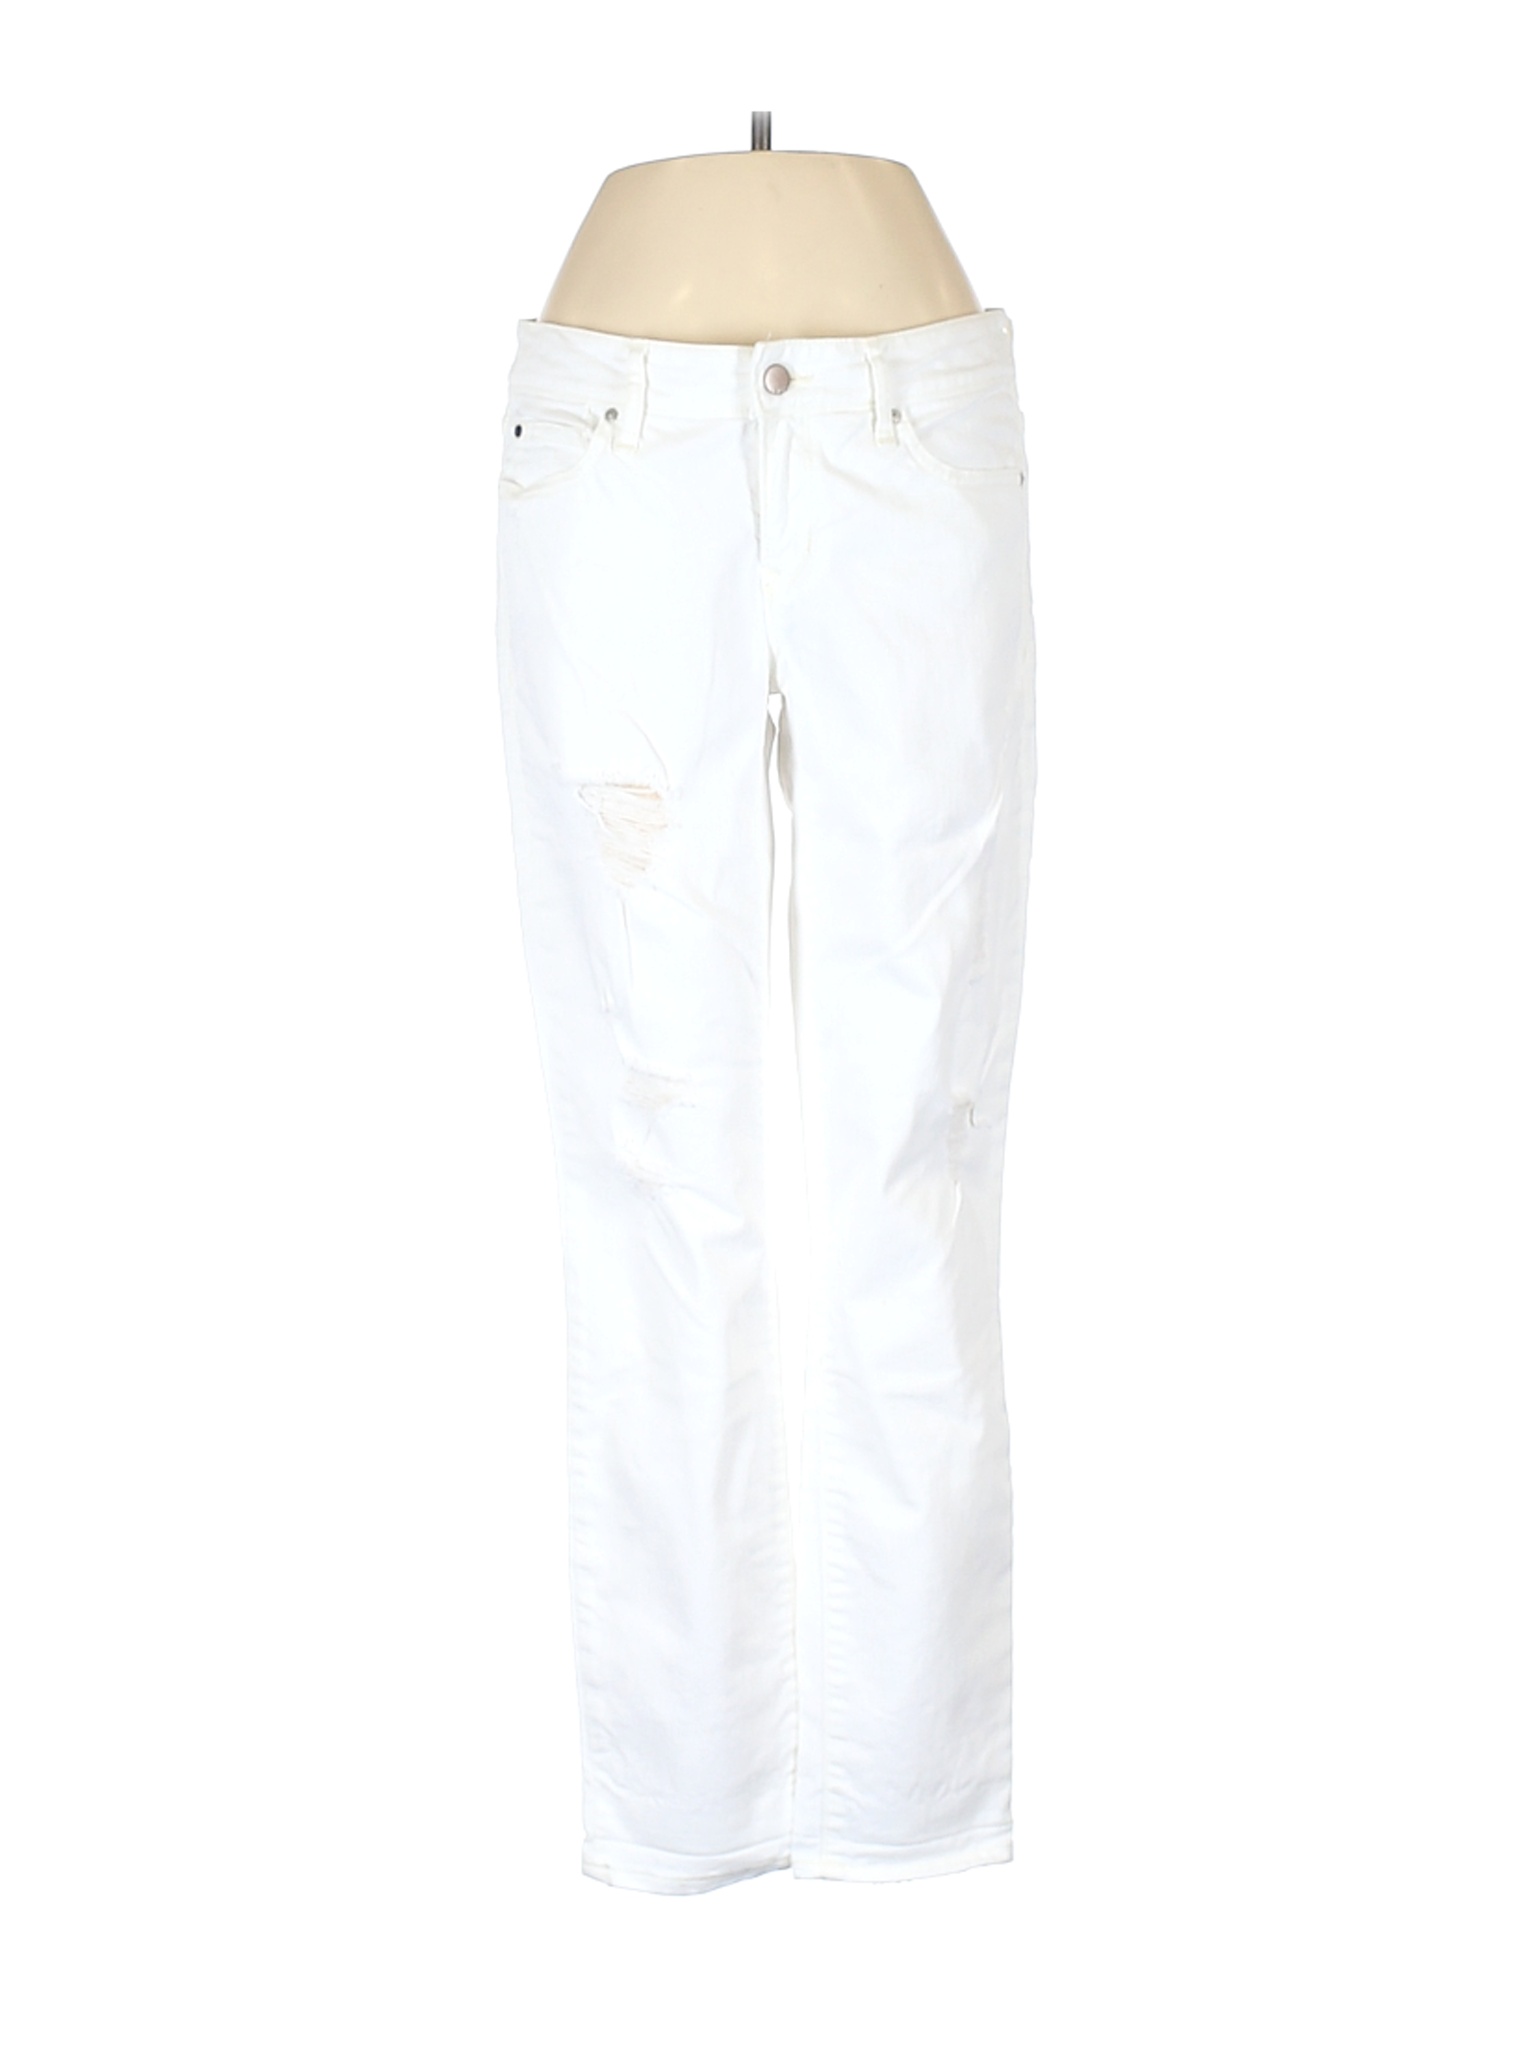 Gap Women White Jeans 26W | eBay